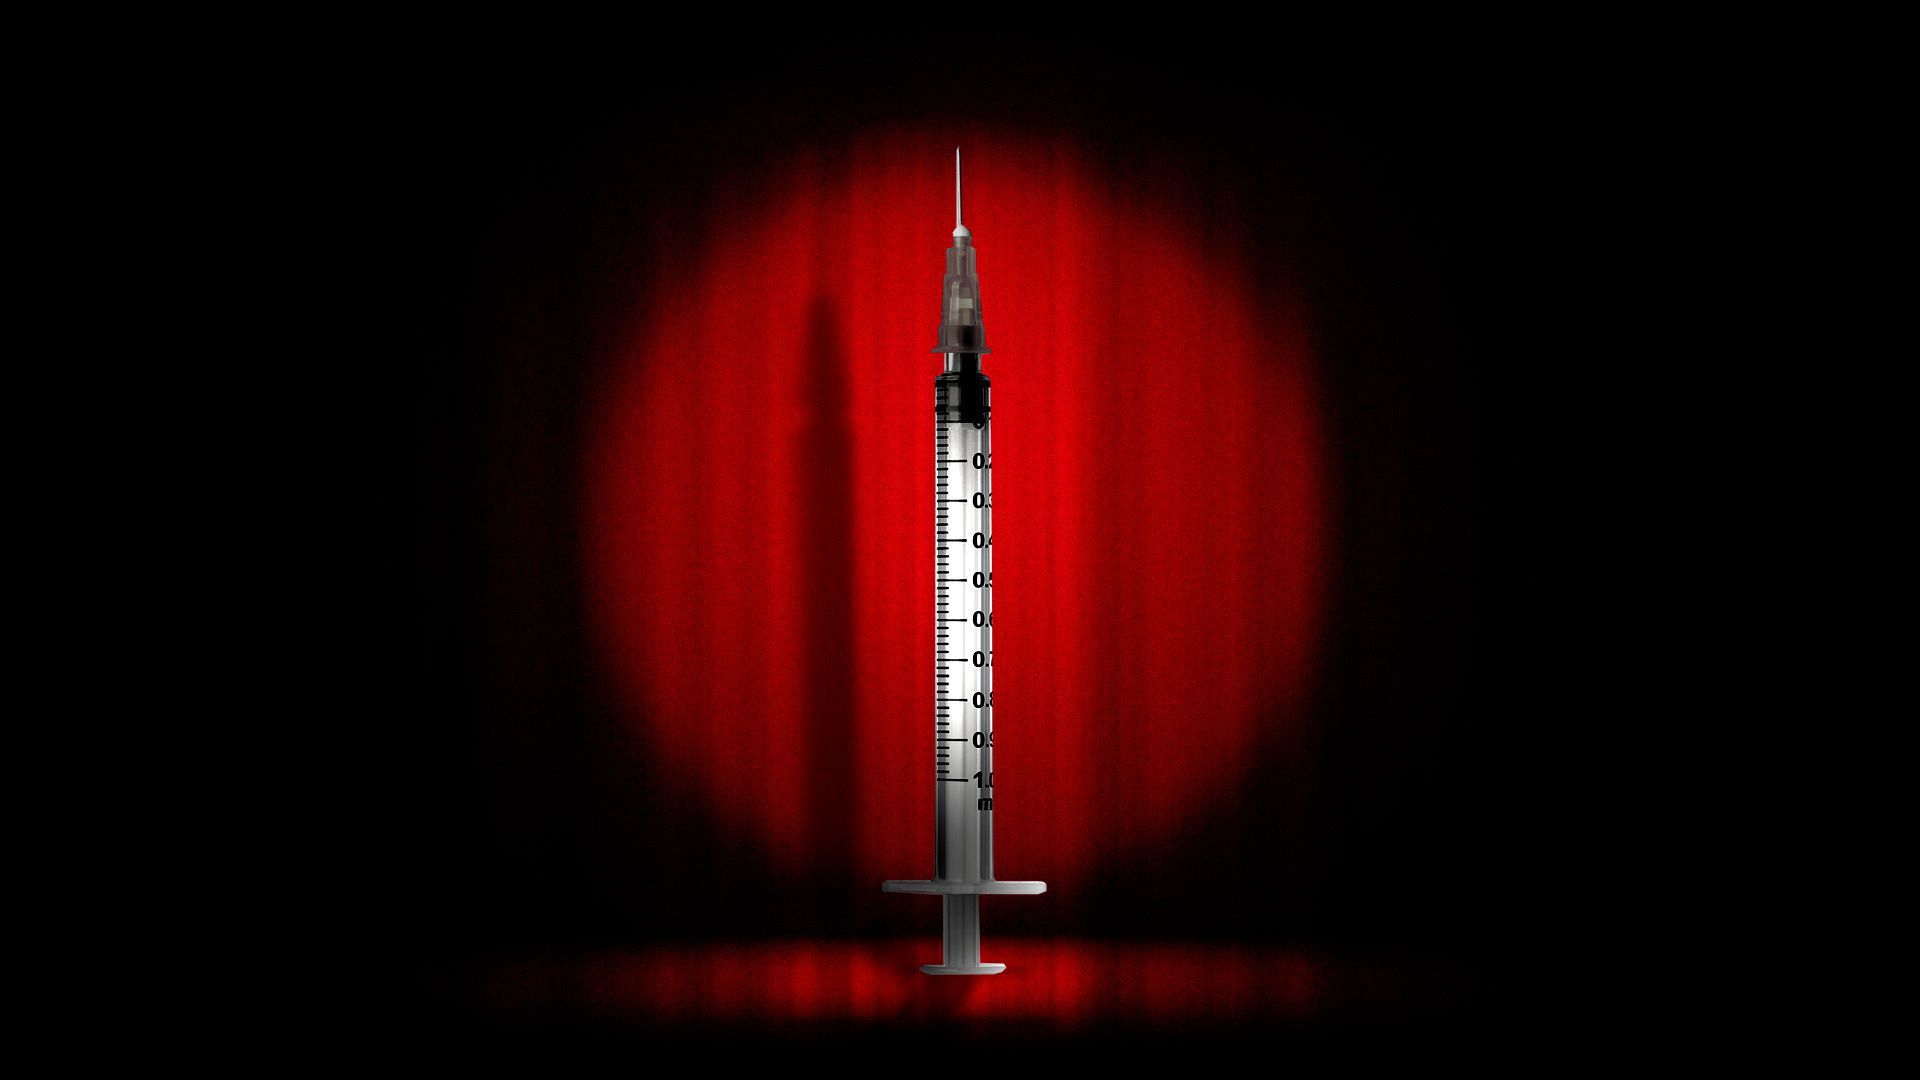 An illustration of a syringe